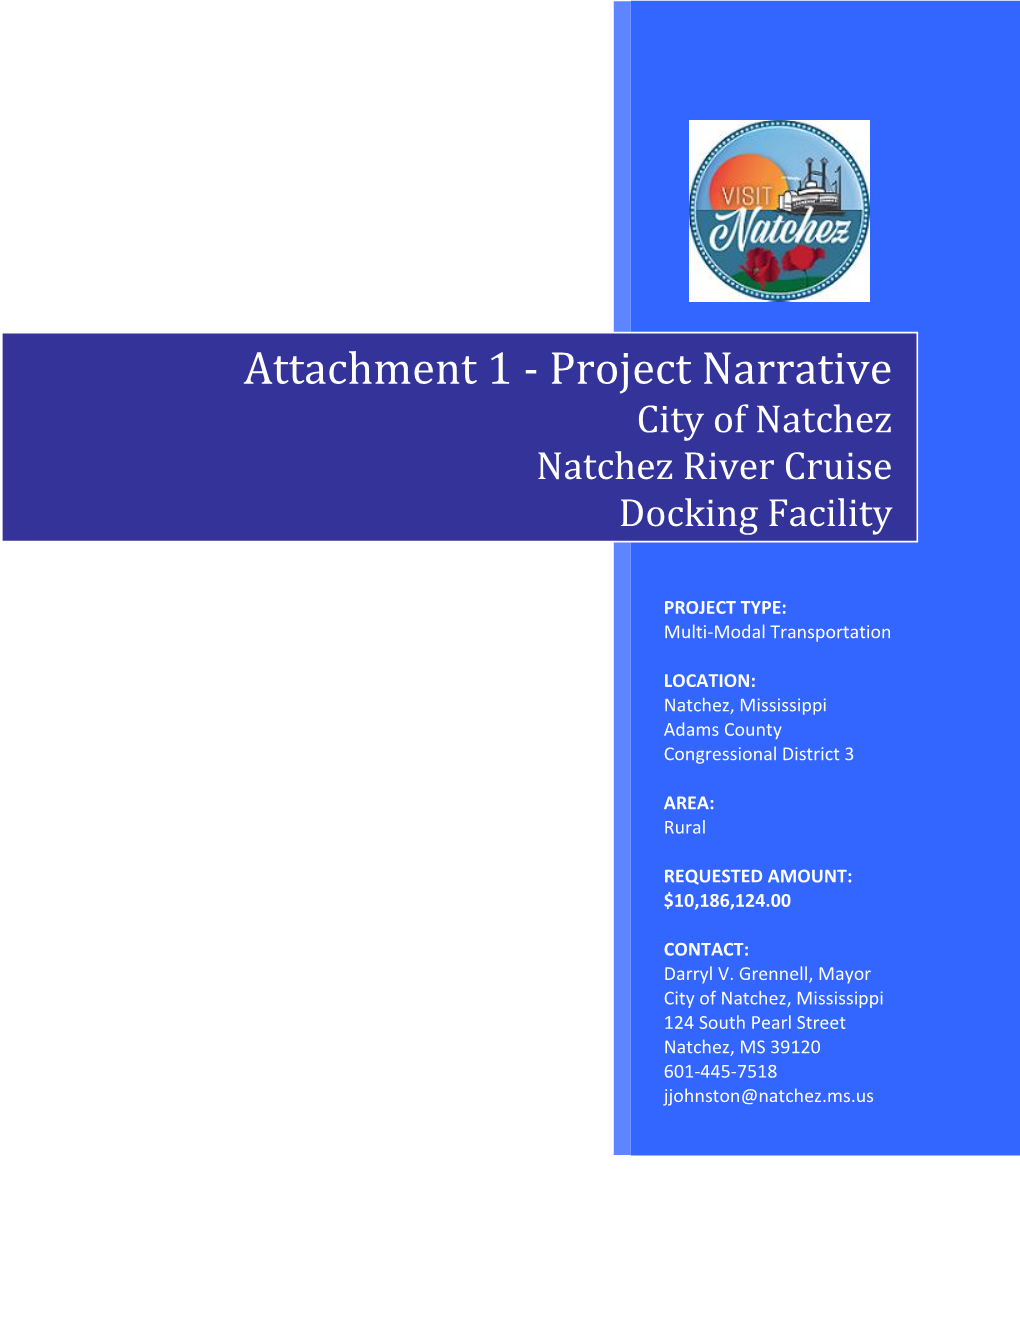 Attachment 1 - Project Narrative City of Natchez